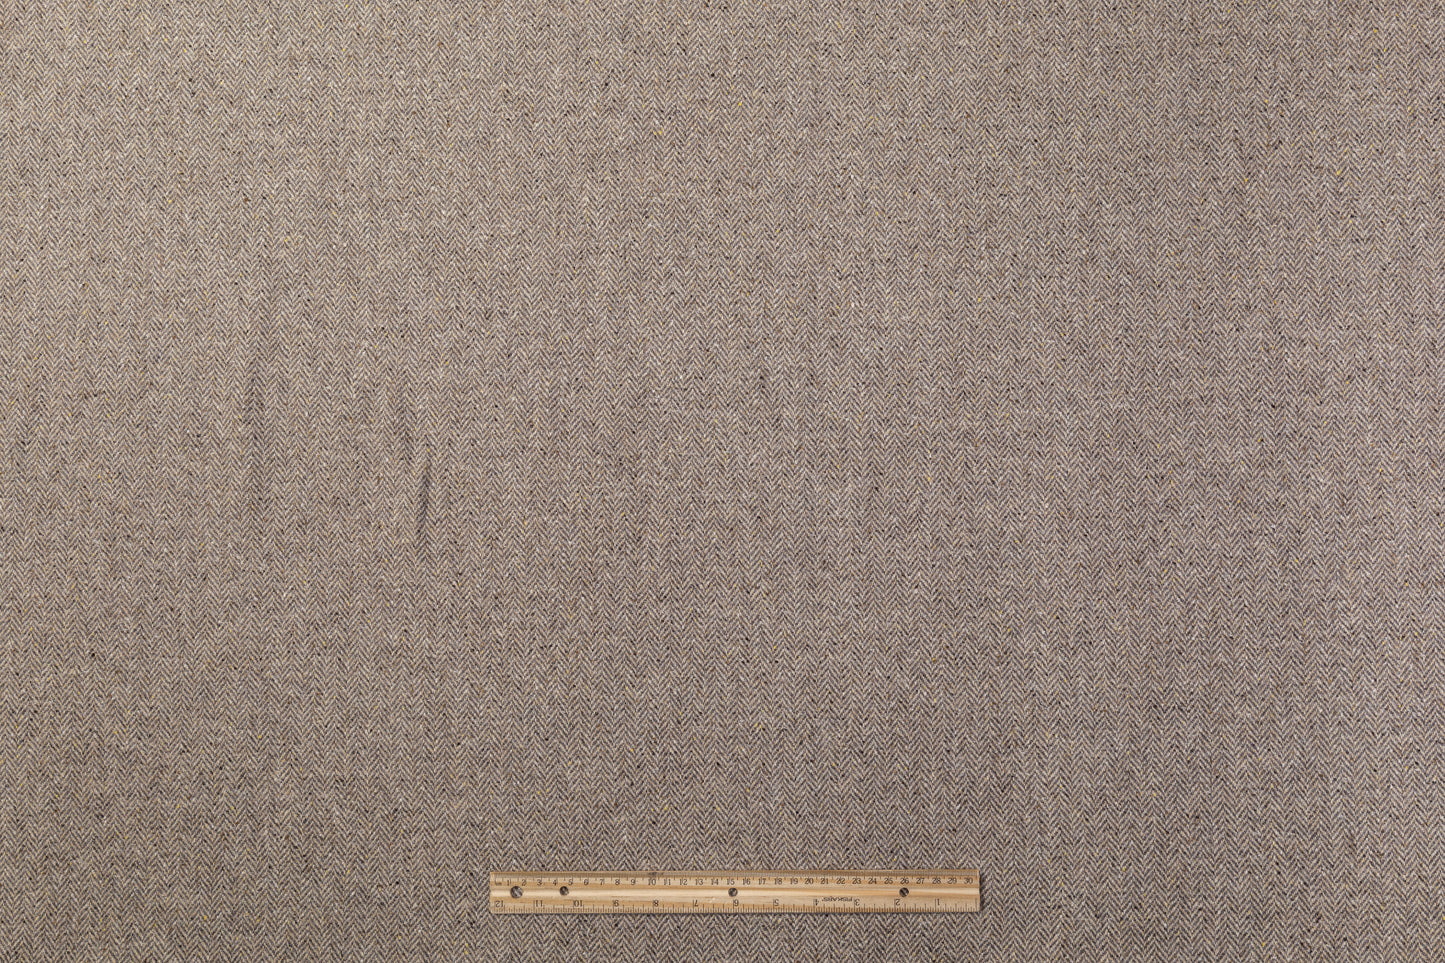 Herringbone Tweed Italian Wool Coating - Gray / Brown